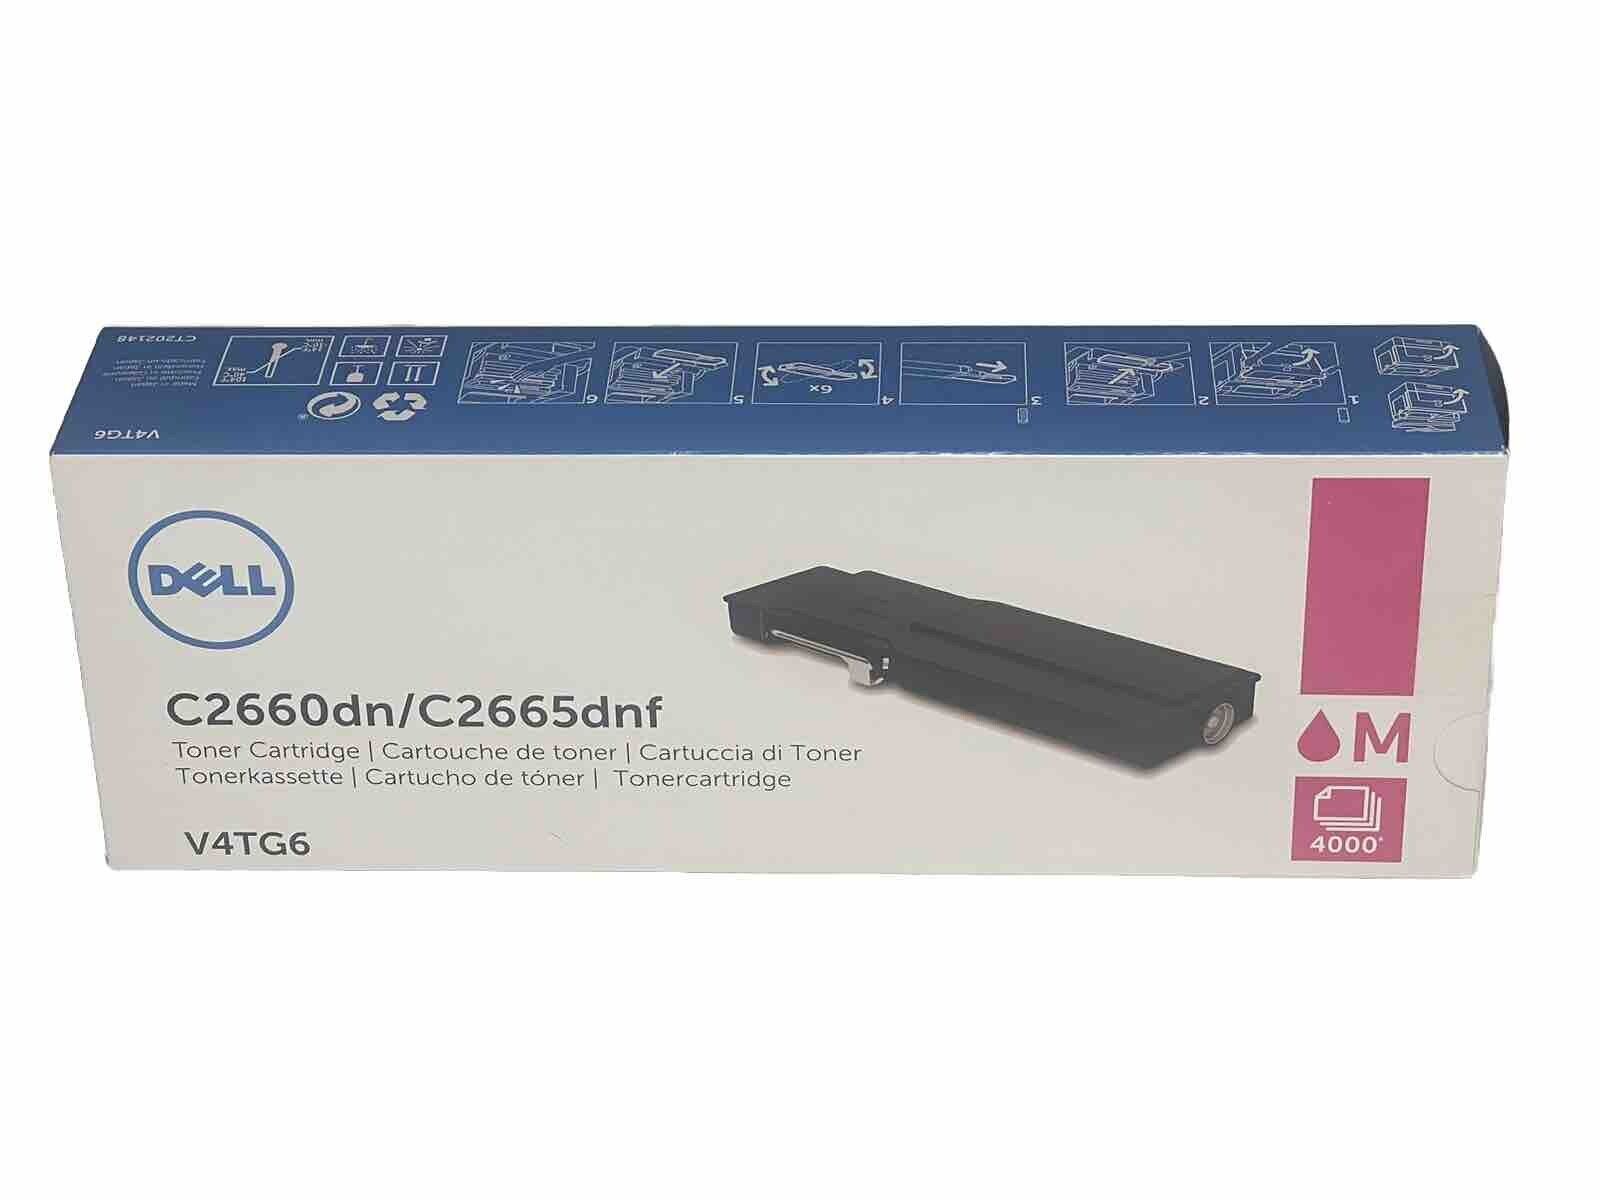 OEM Dell C2660dn/C2665dnf High Yield Toner - Magenta (V4TG6) Fast 